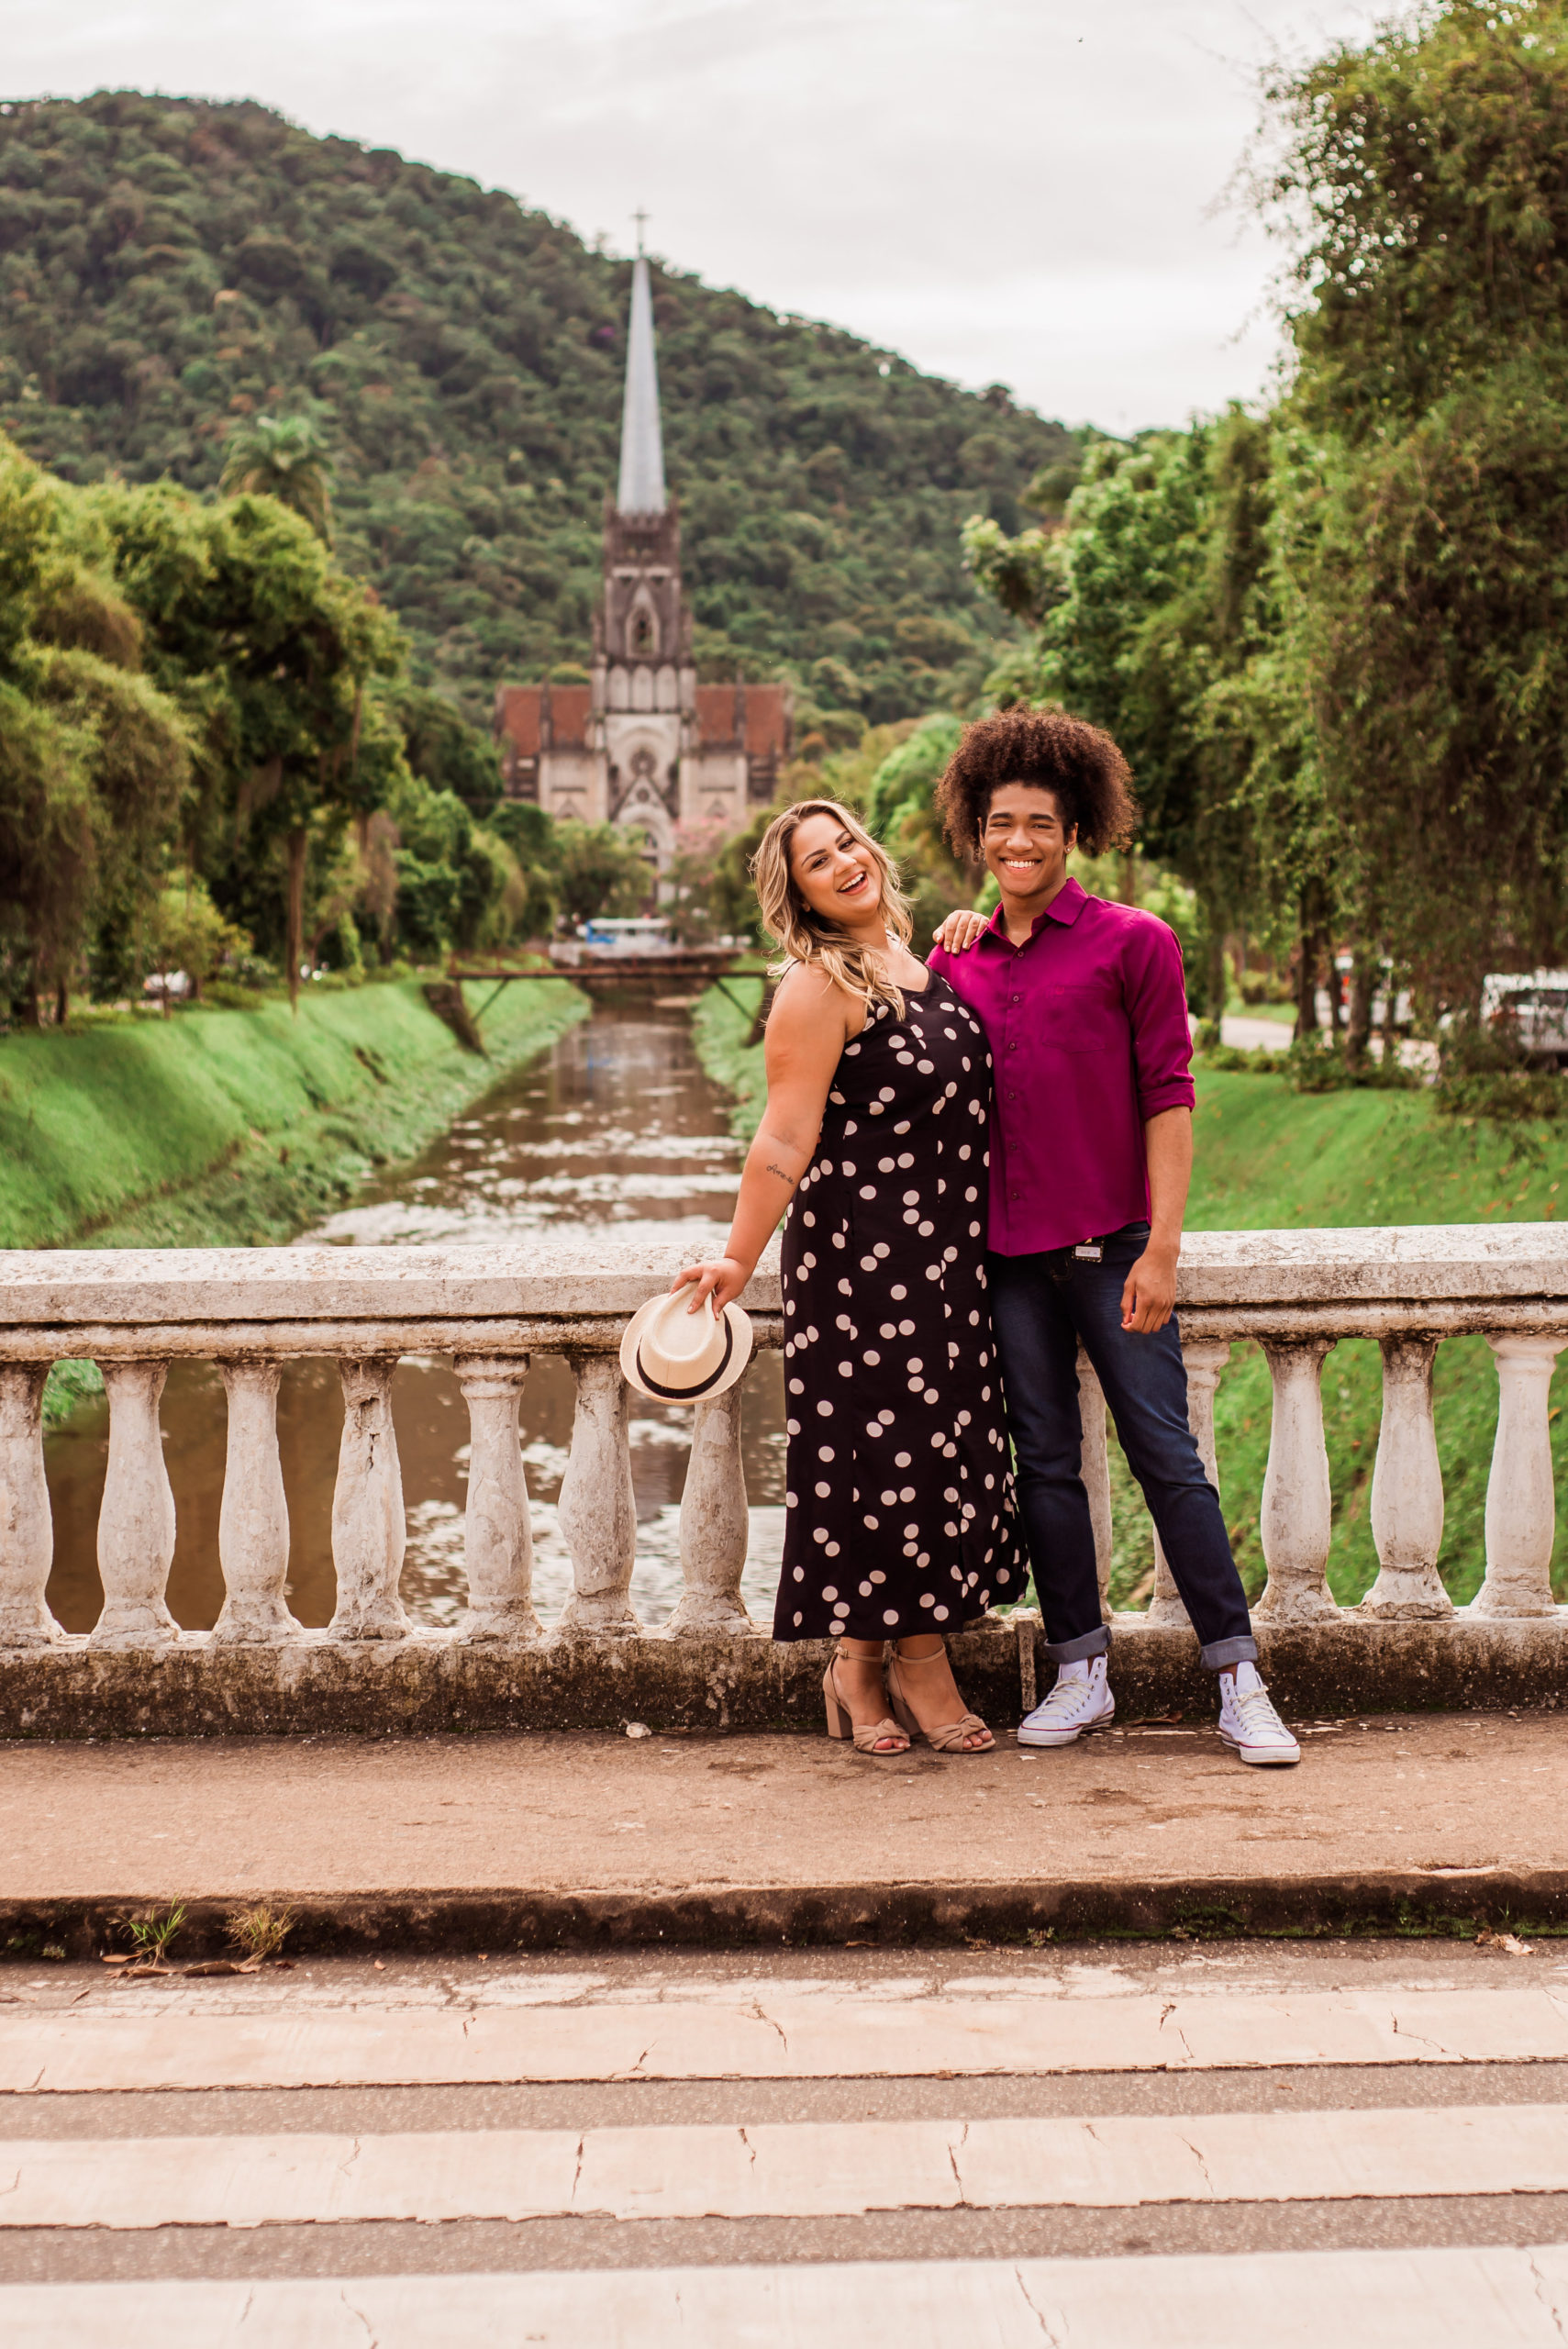 Rua Teresa lança ensaio fotográfico em pontos turísticos de Petrópolis